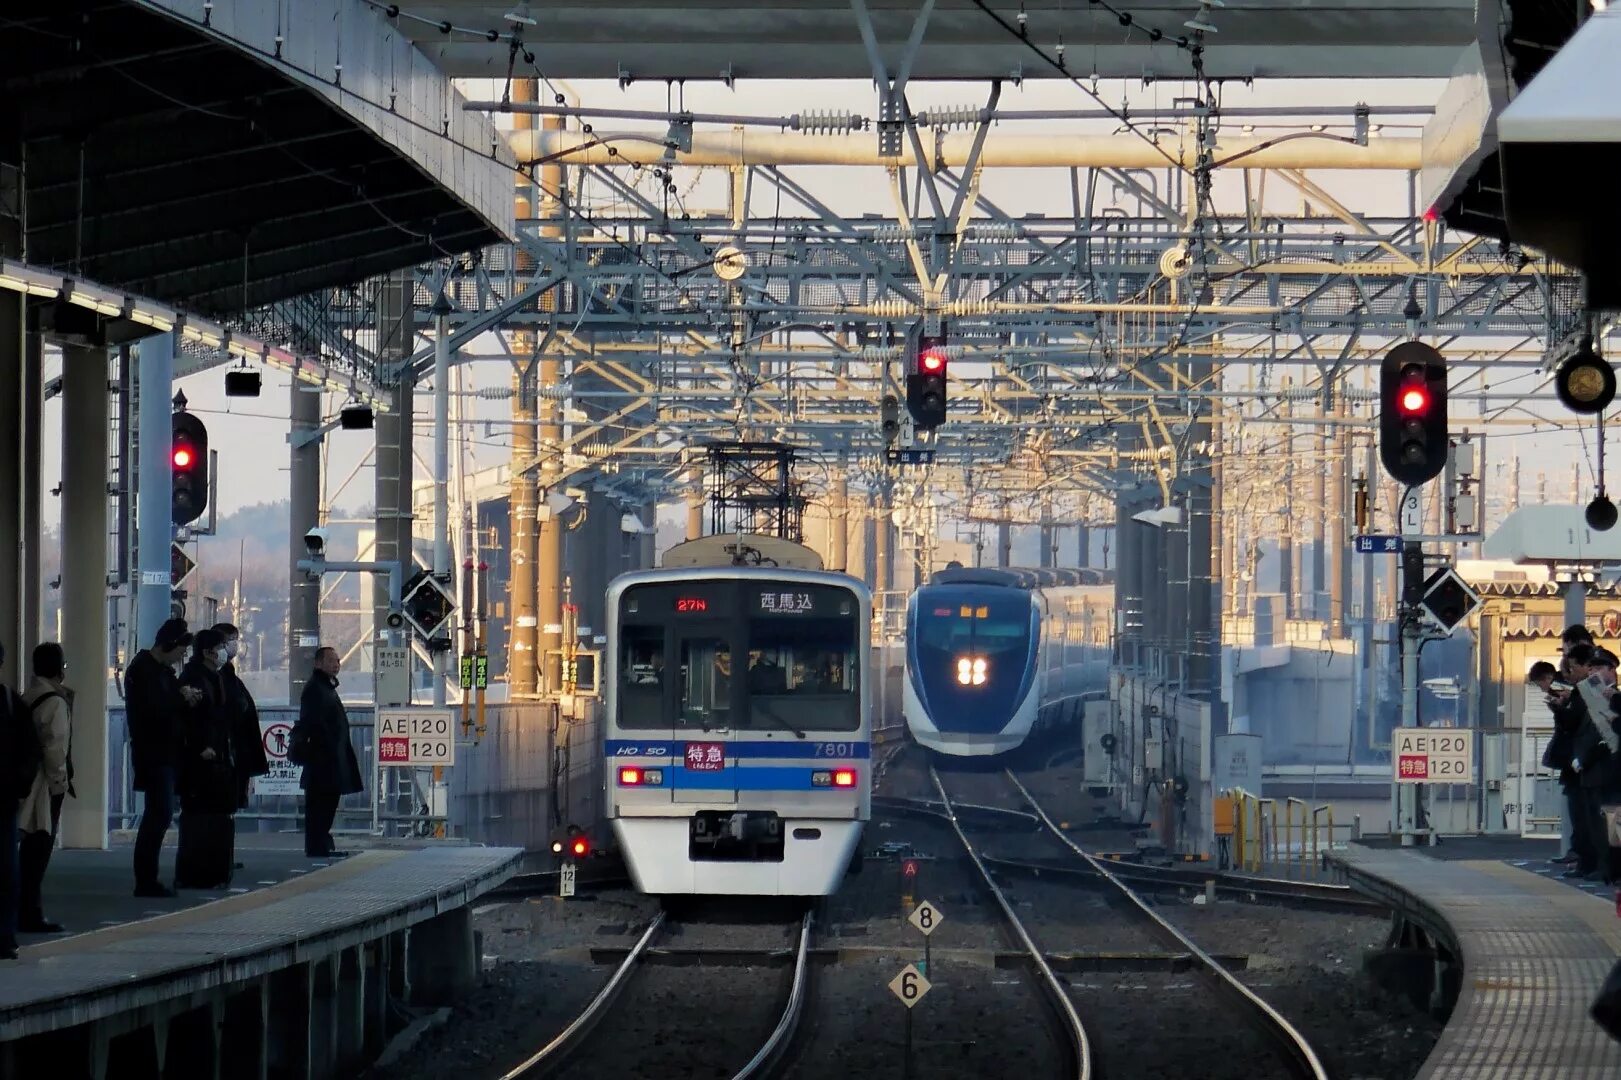 Гоу транспорт. Железнодорожная станция Токио. Станции поездов Токио. Поезда Японии Токио. Электрический транспорт железных дорог.